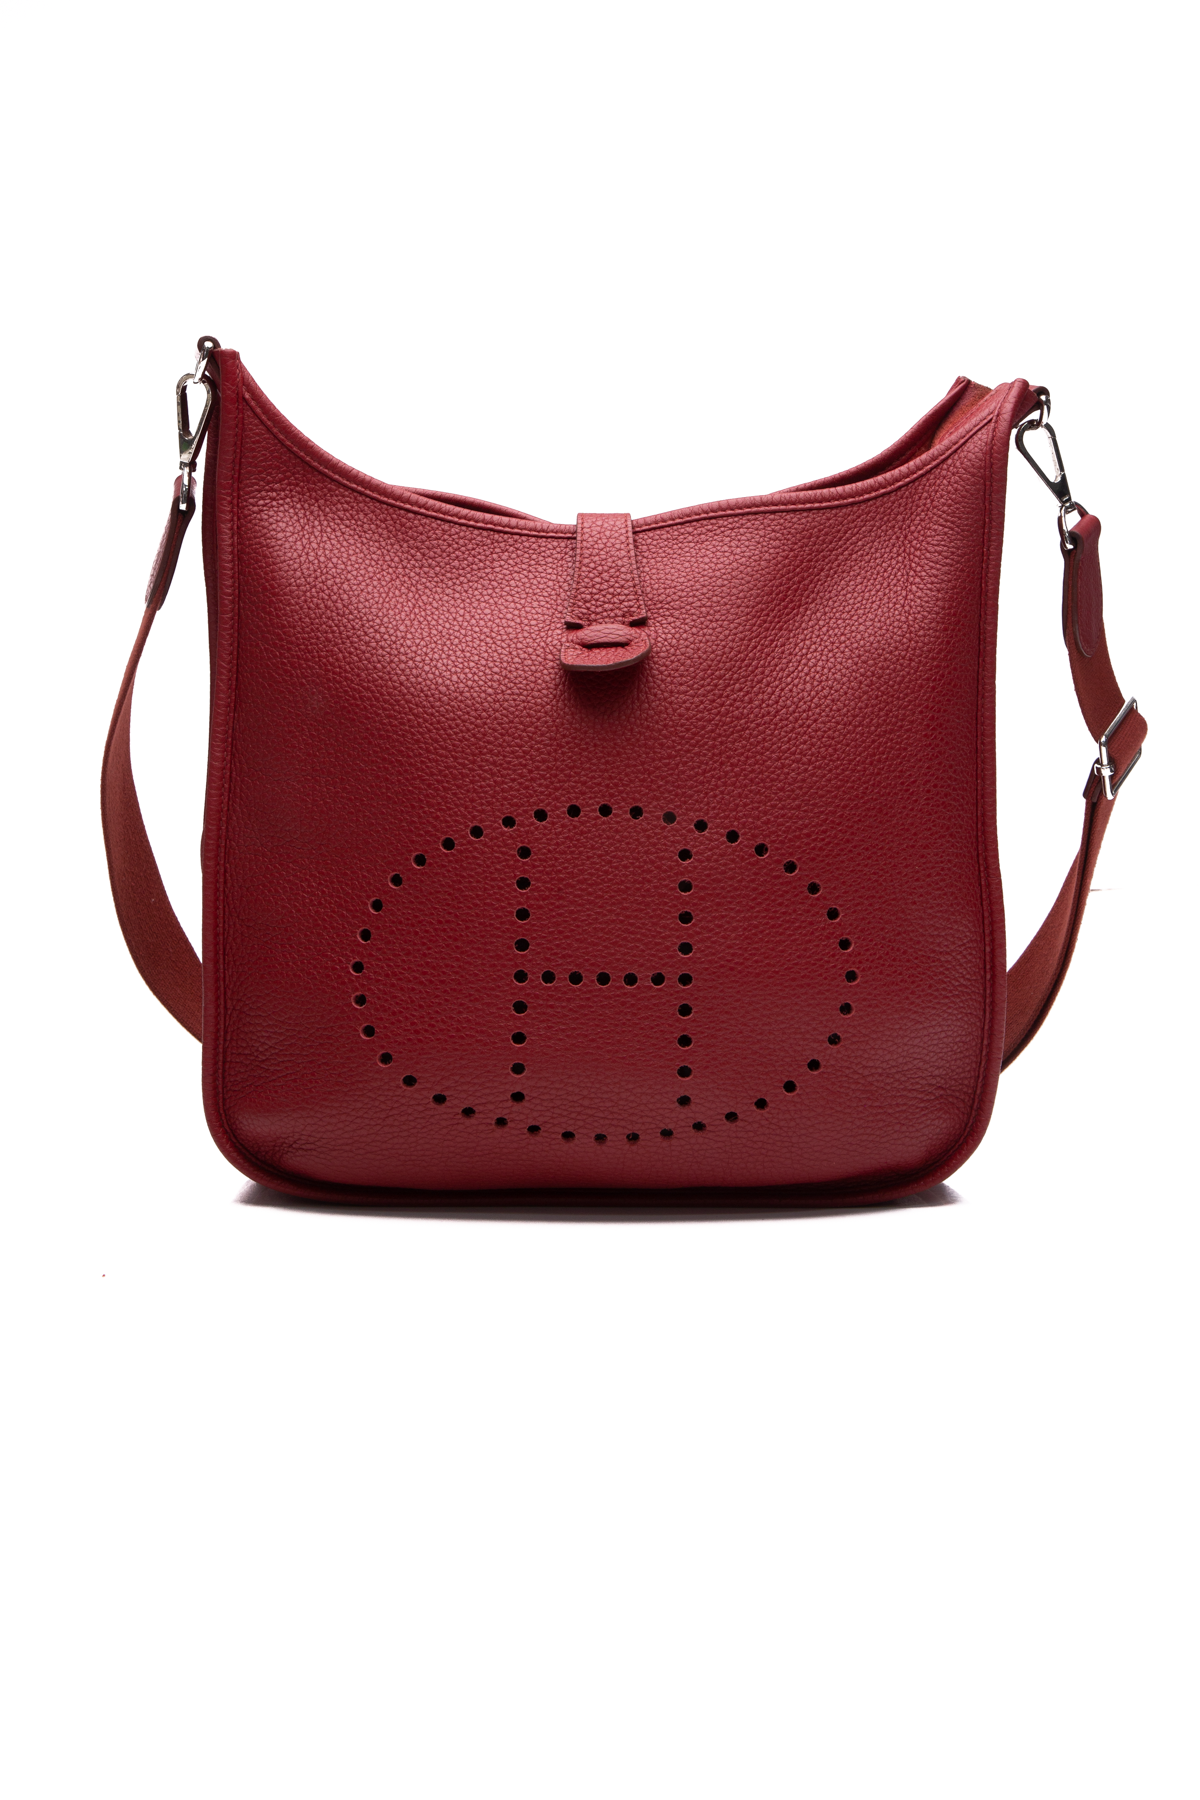 Hermes Evelyne II GM Bag - Couture USA